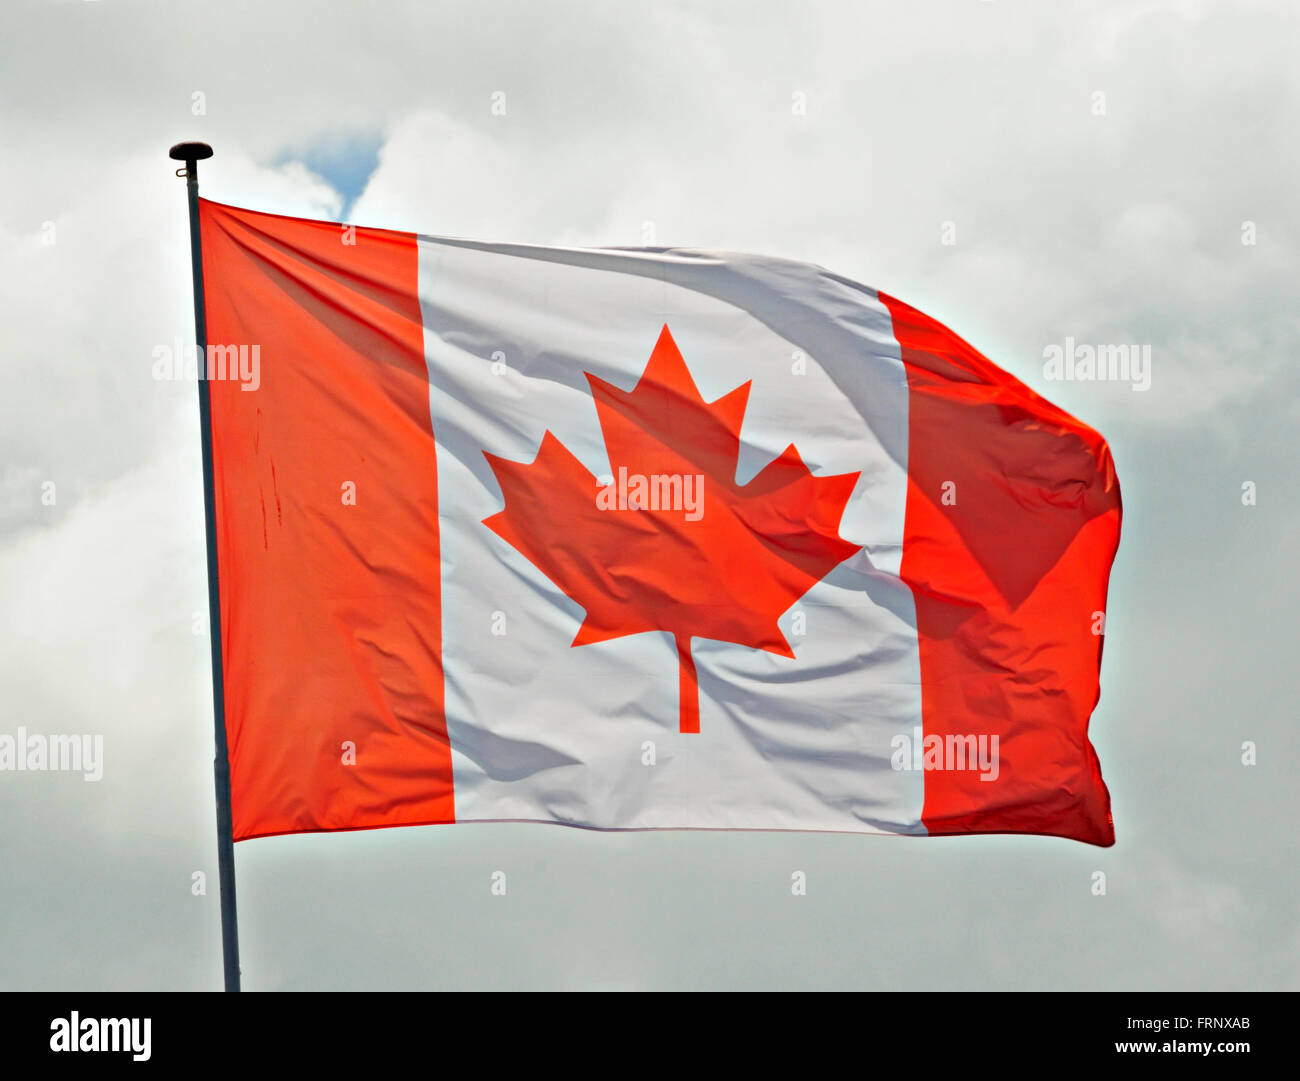 Drapeau canadien flottant dans un jeu d'enfant. Banque D'Images